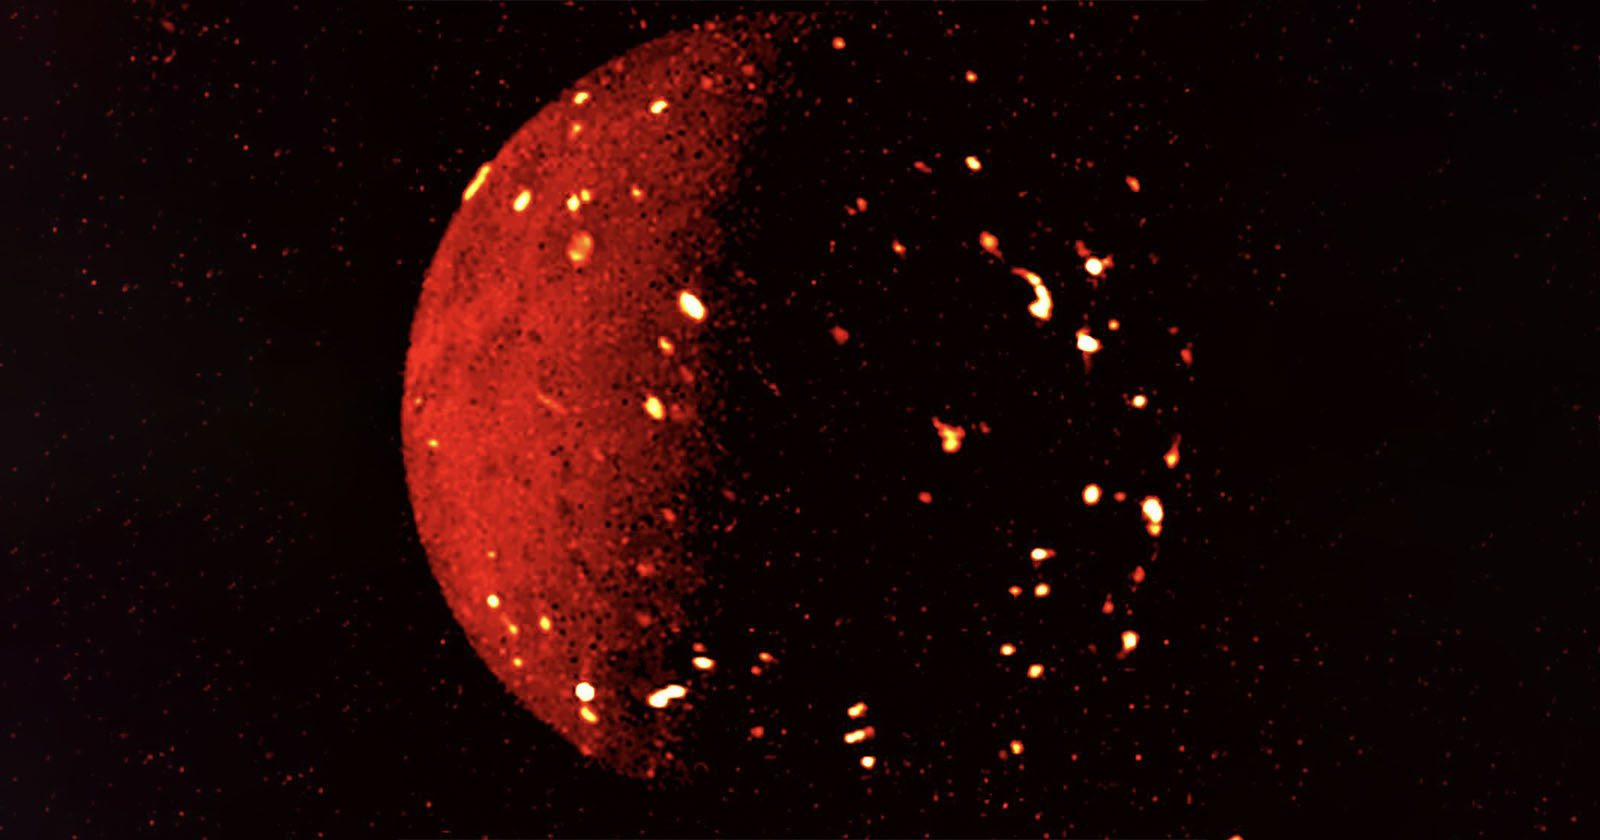  nasa releases photo fiery lava lakes jupiter moon 